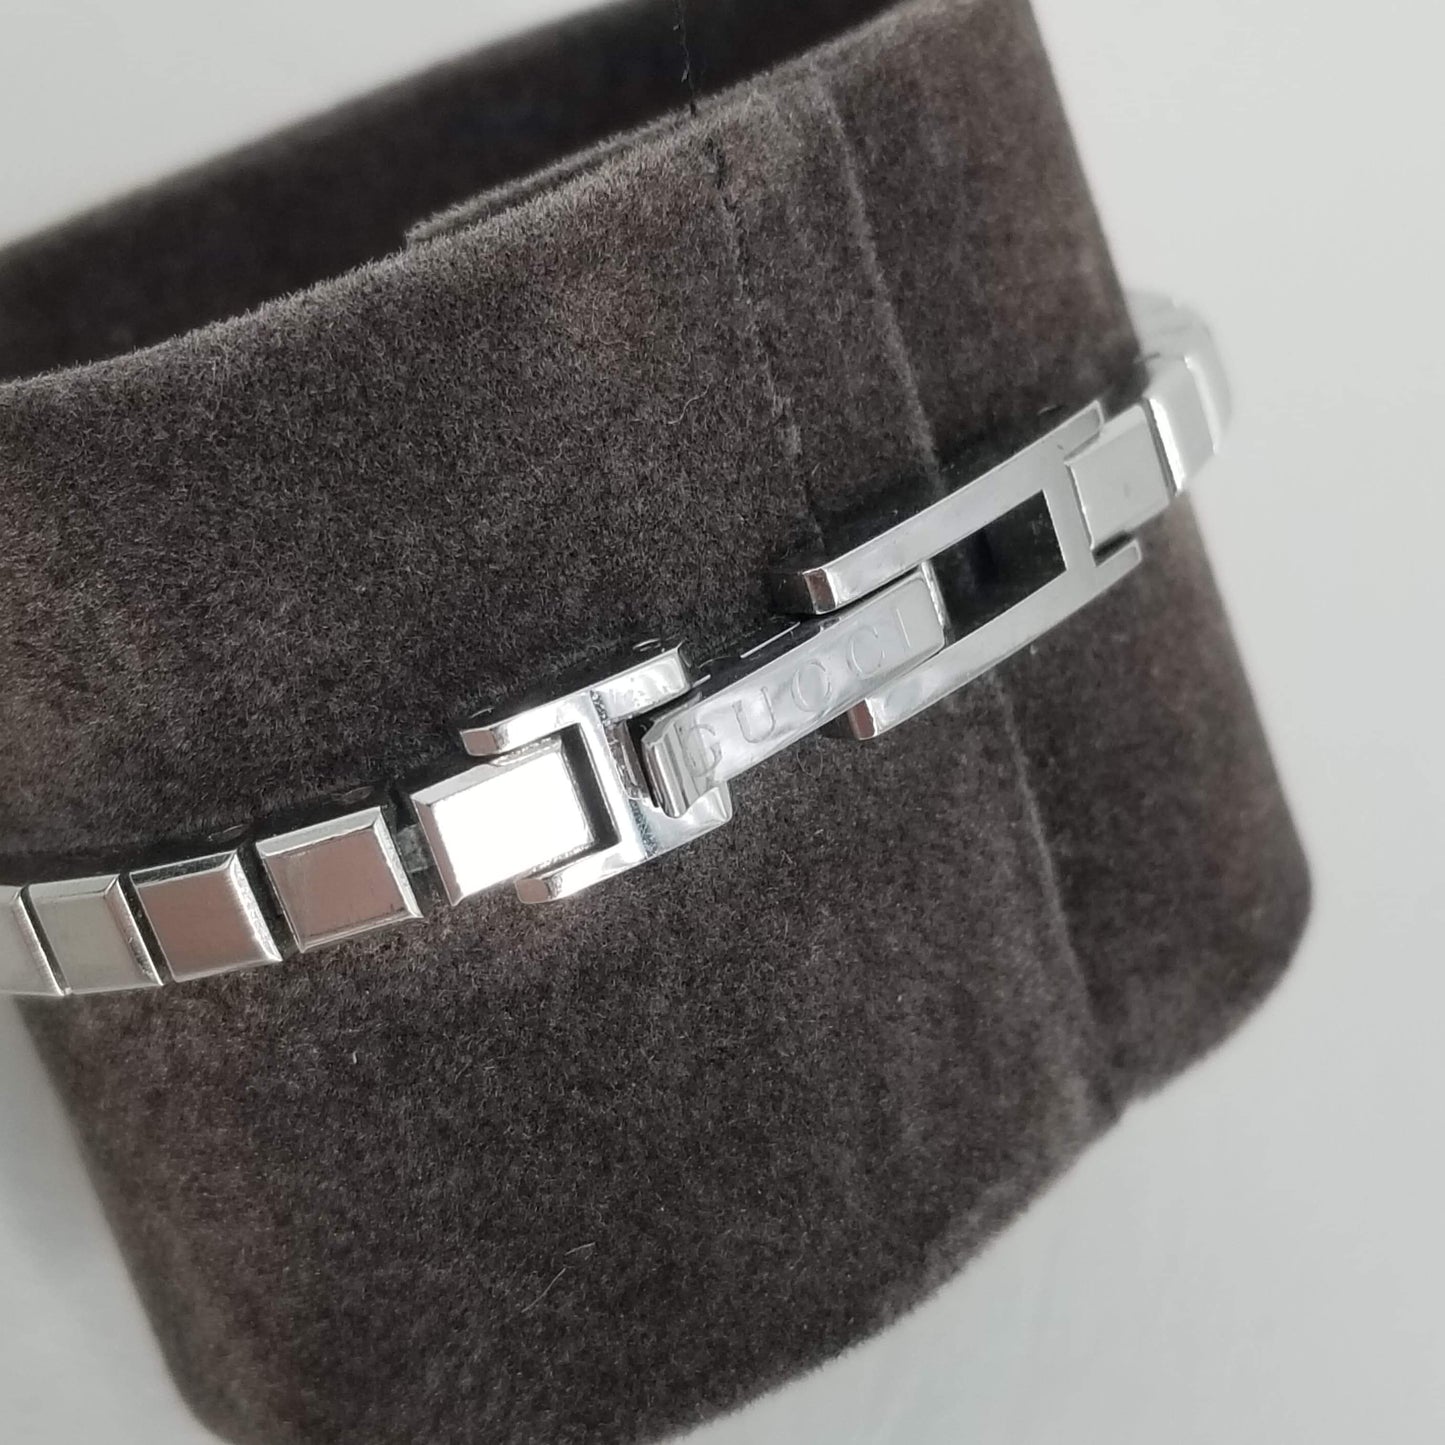 Authentic Gucci Vintage Silver G Bracelet Watch